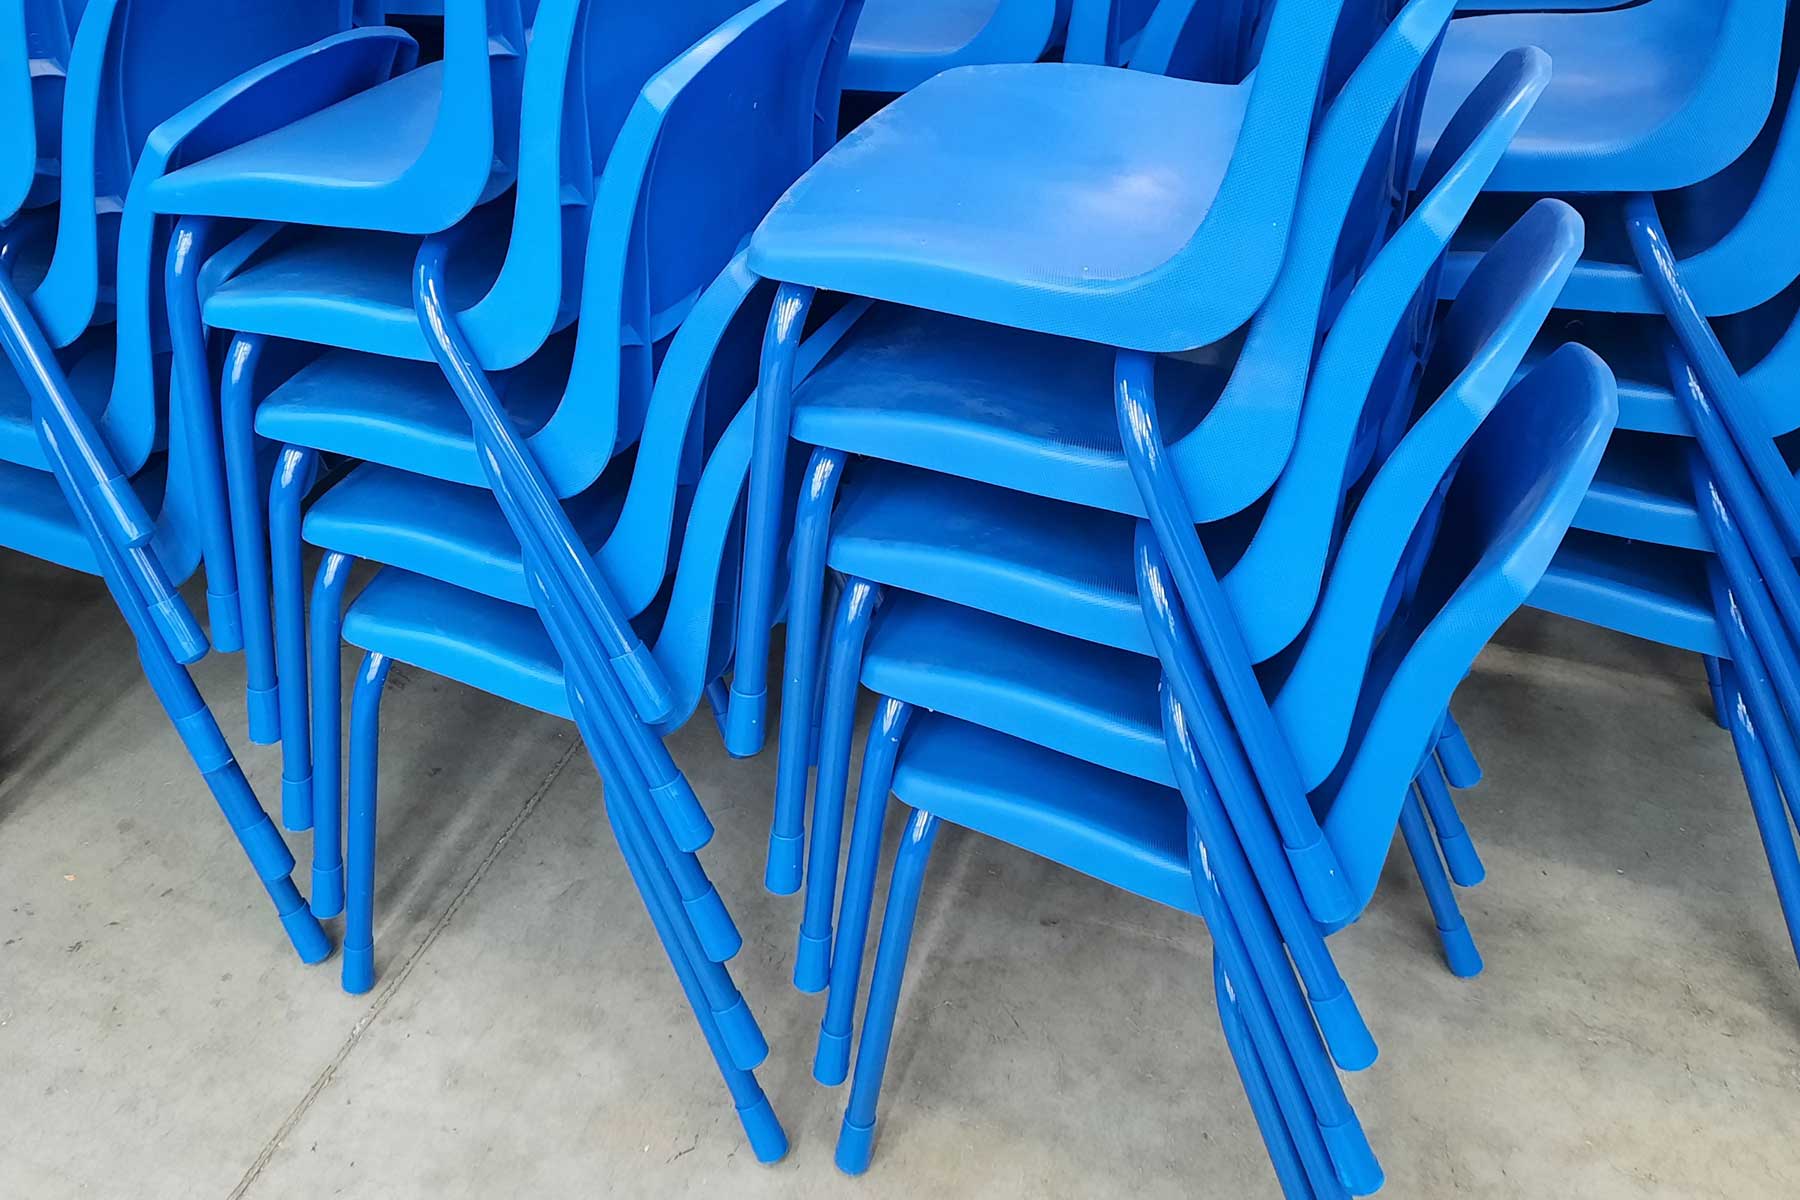 adaptabilidad del mobiliario escolar